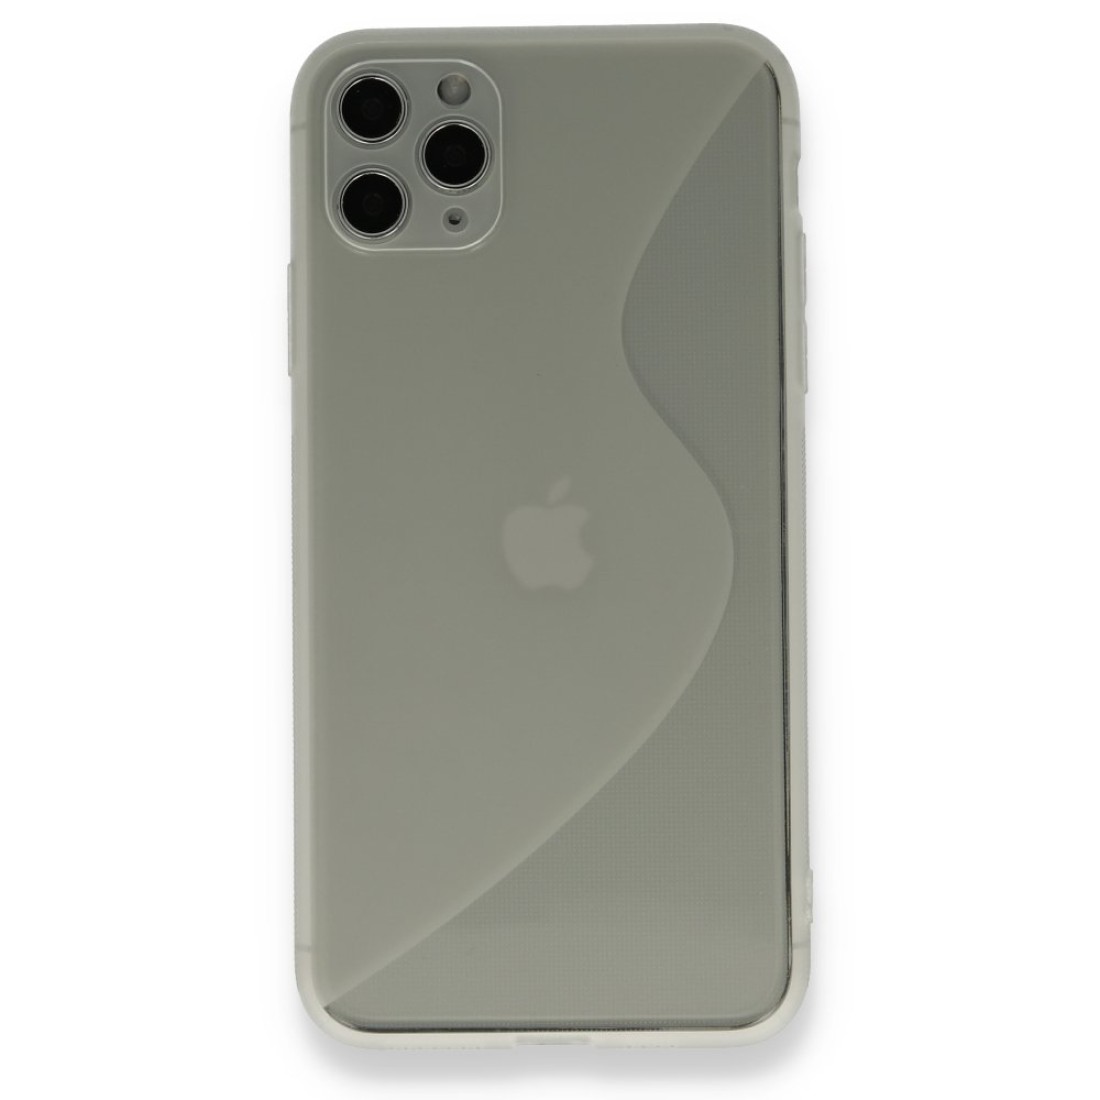 Apple iPhone 11 Pro Max Kılıf S Silikon - Şeffaf